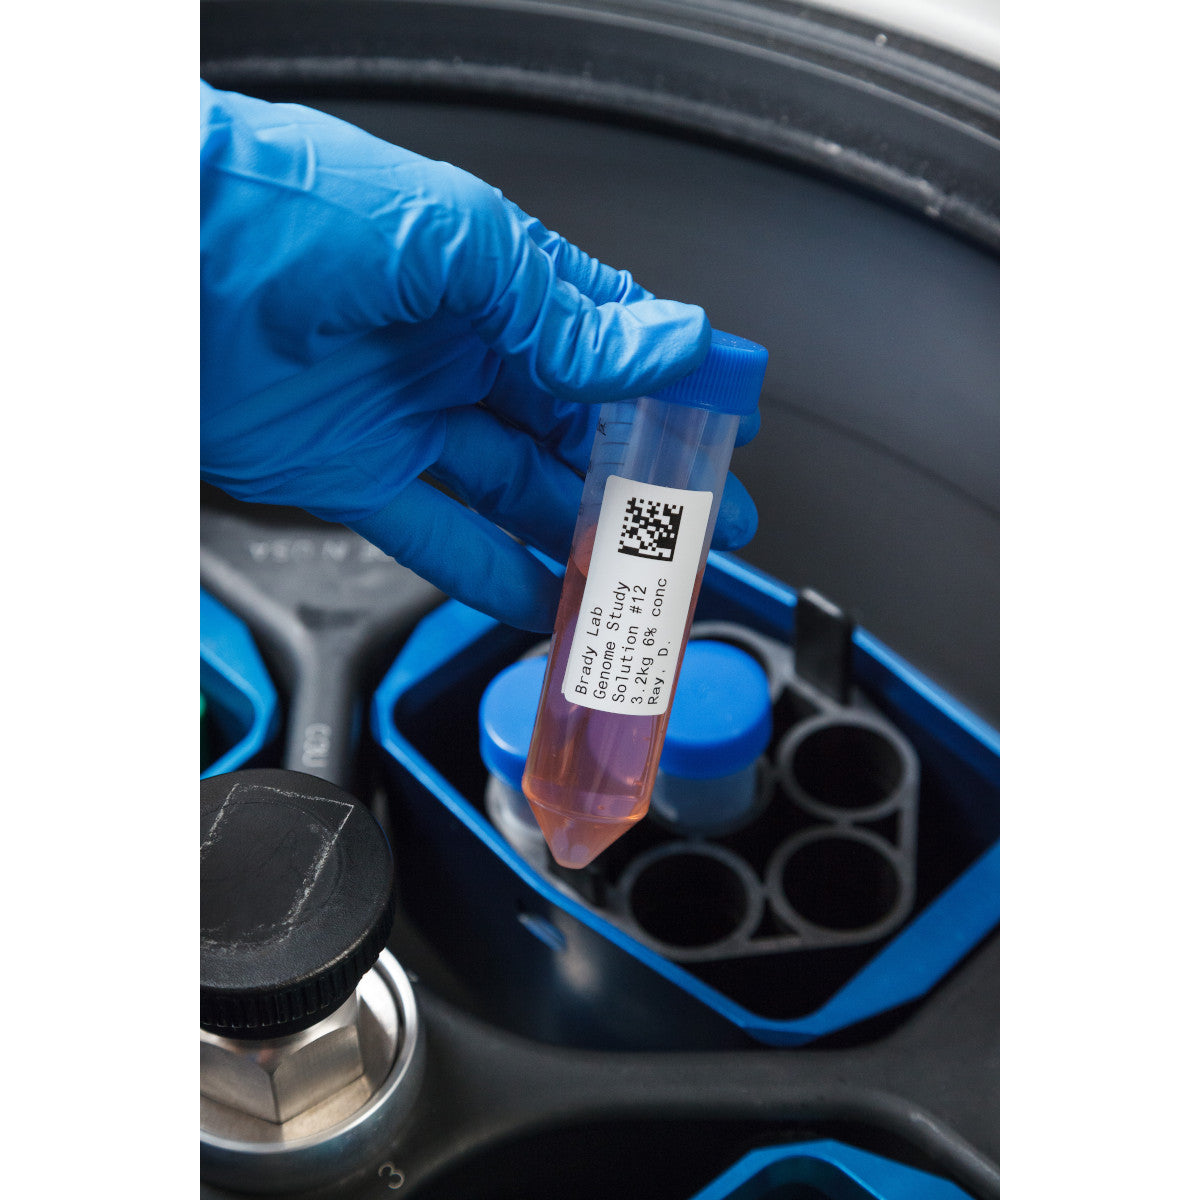 011266 - Etichette per criogenia e autoclave in poliestere core 76 mm ROTOLO DA 3000 ETICHETTE